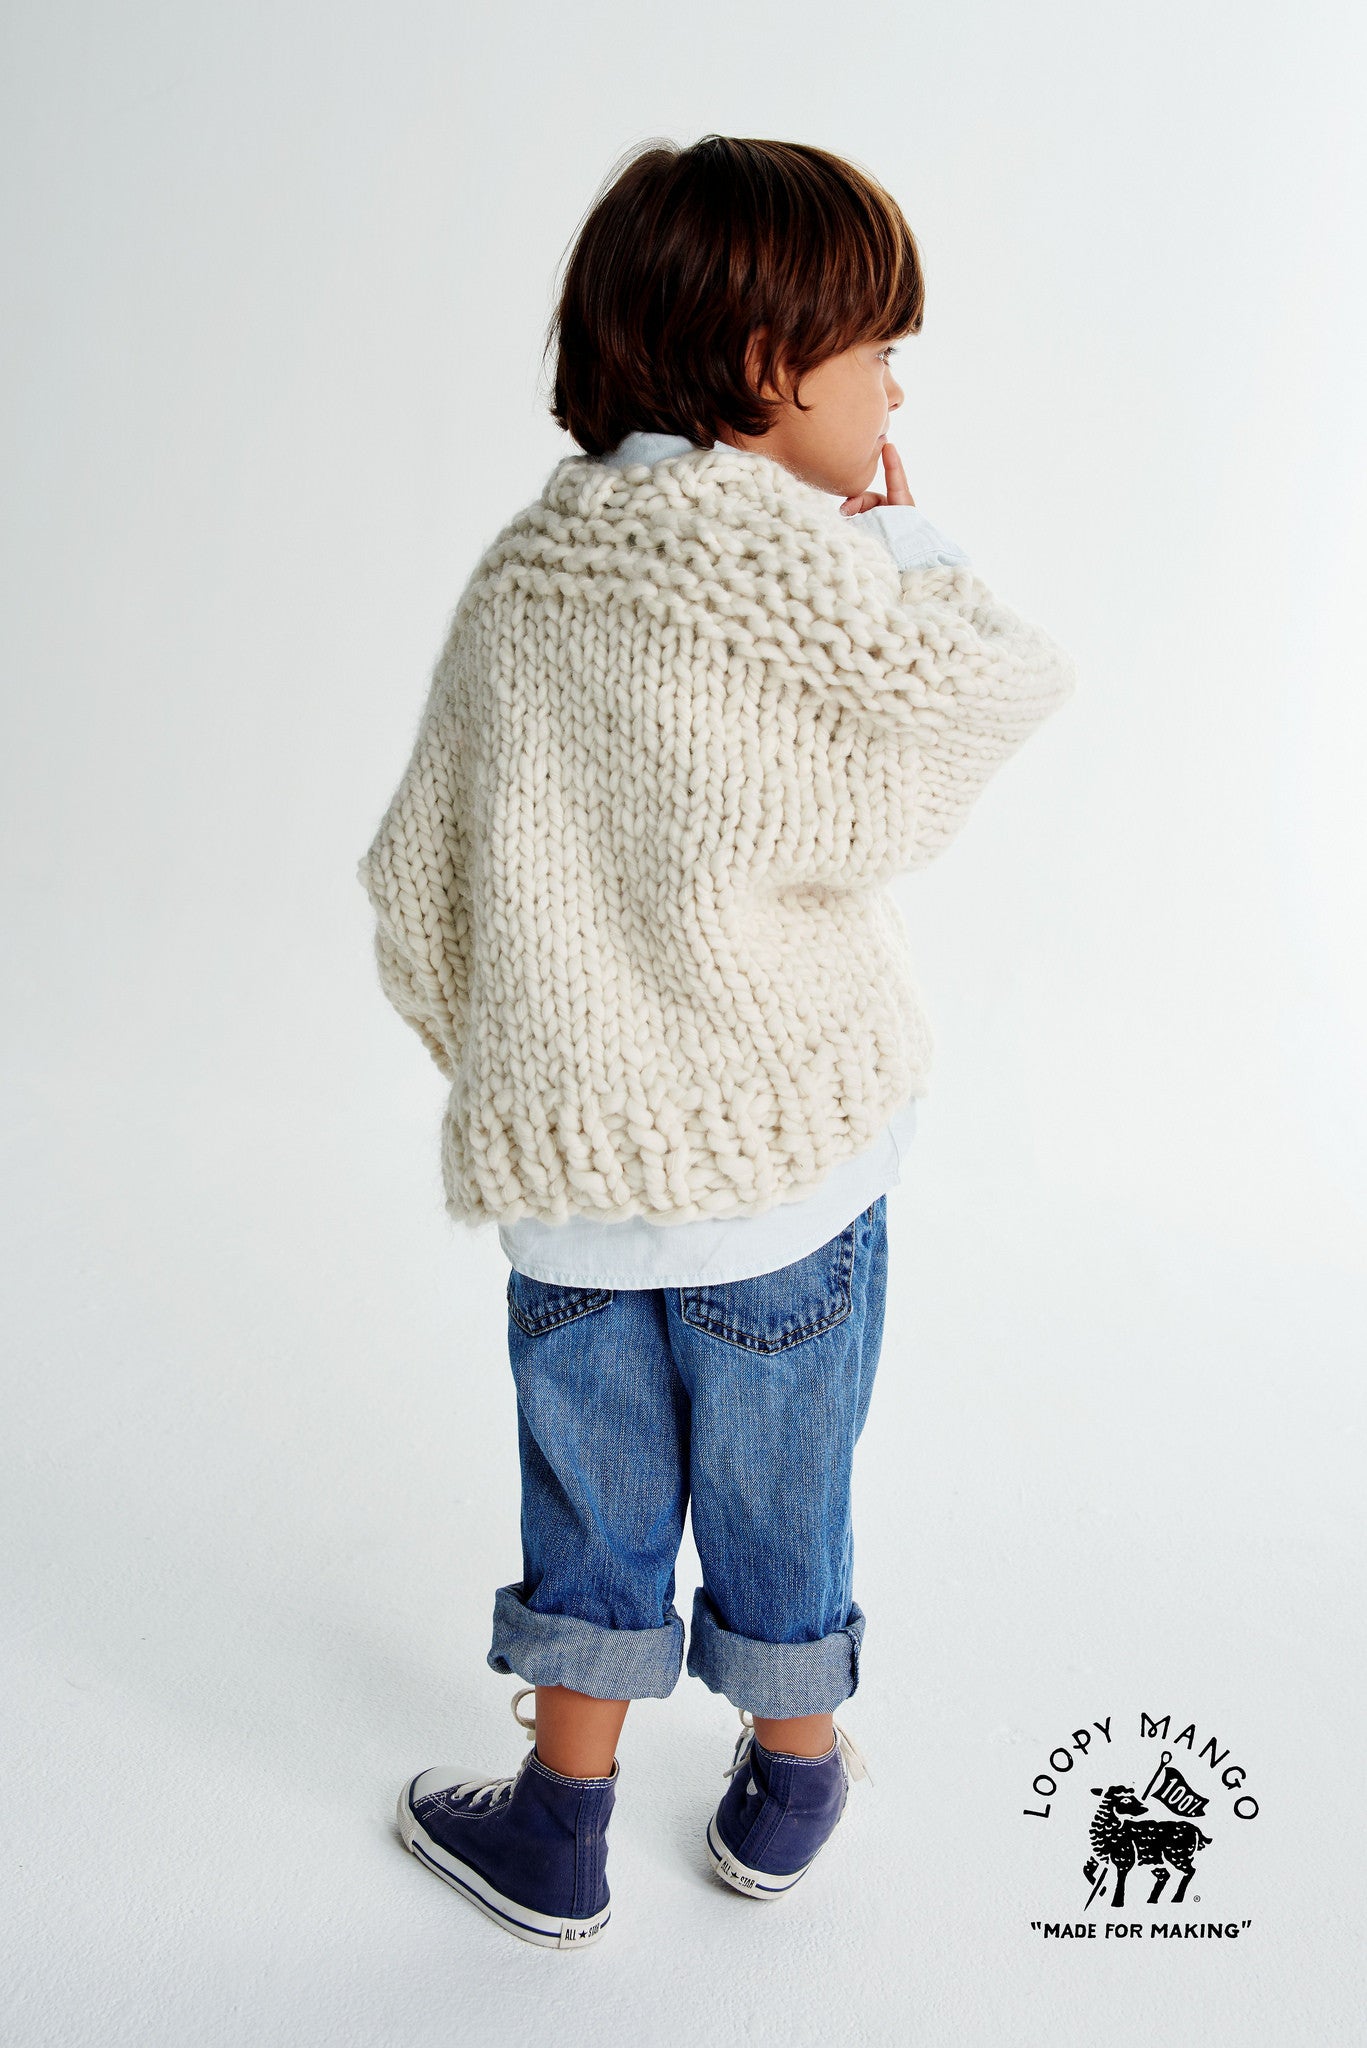 DIY Kit - Mini Cardigan Size 6-18 months, 1-4 years old - Merino No. 5